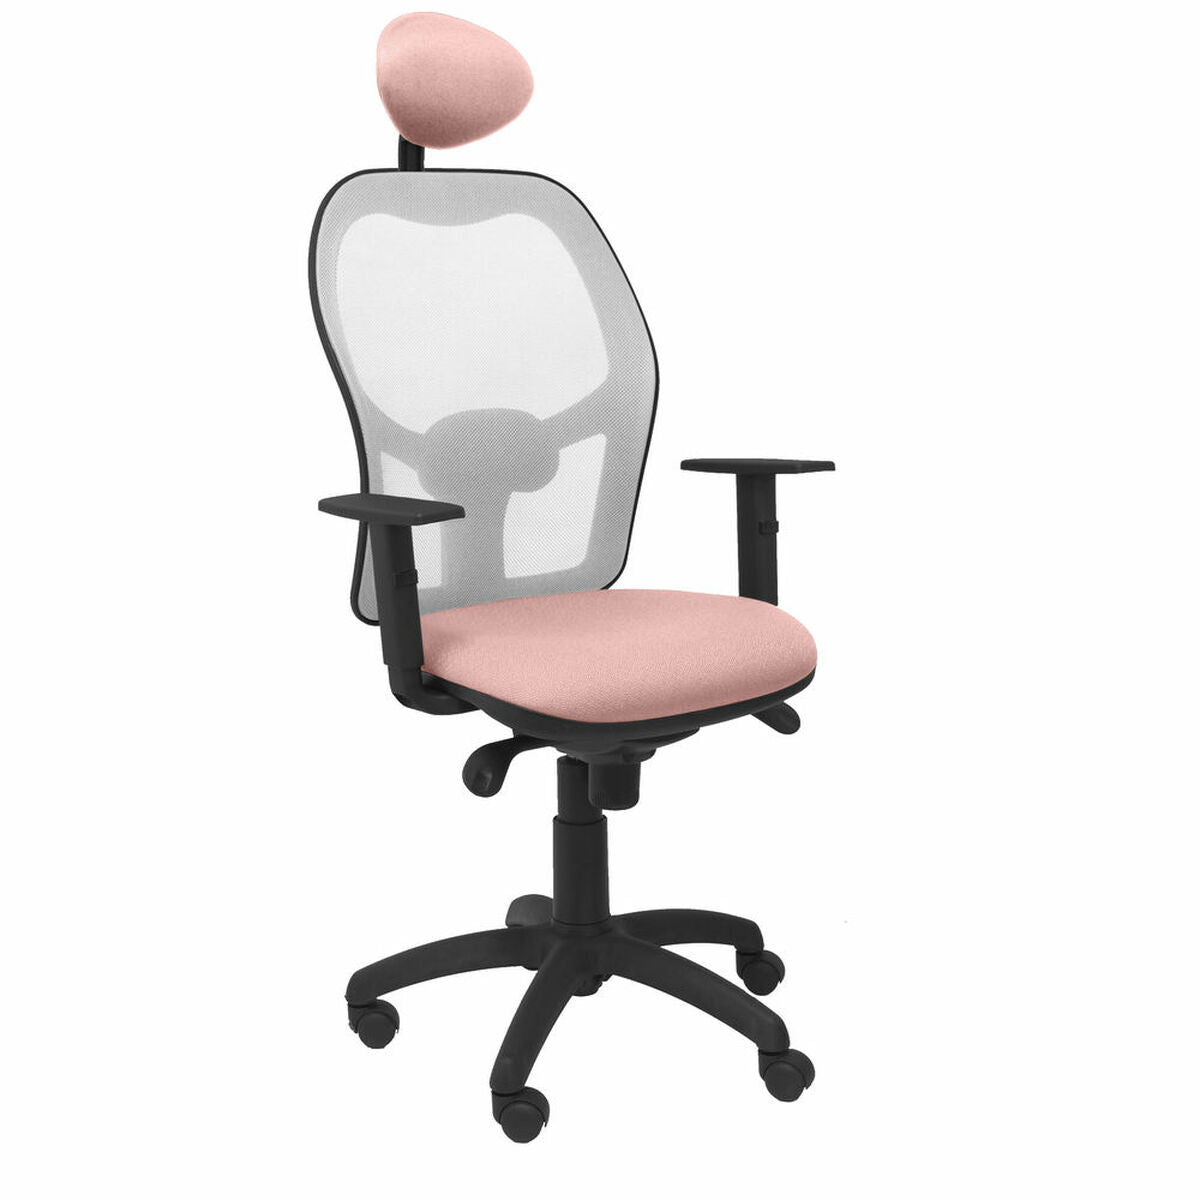 Bureaustoel met hoofdsteun Jorquera P&C ALI710C Roze